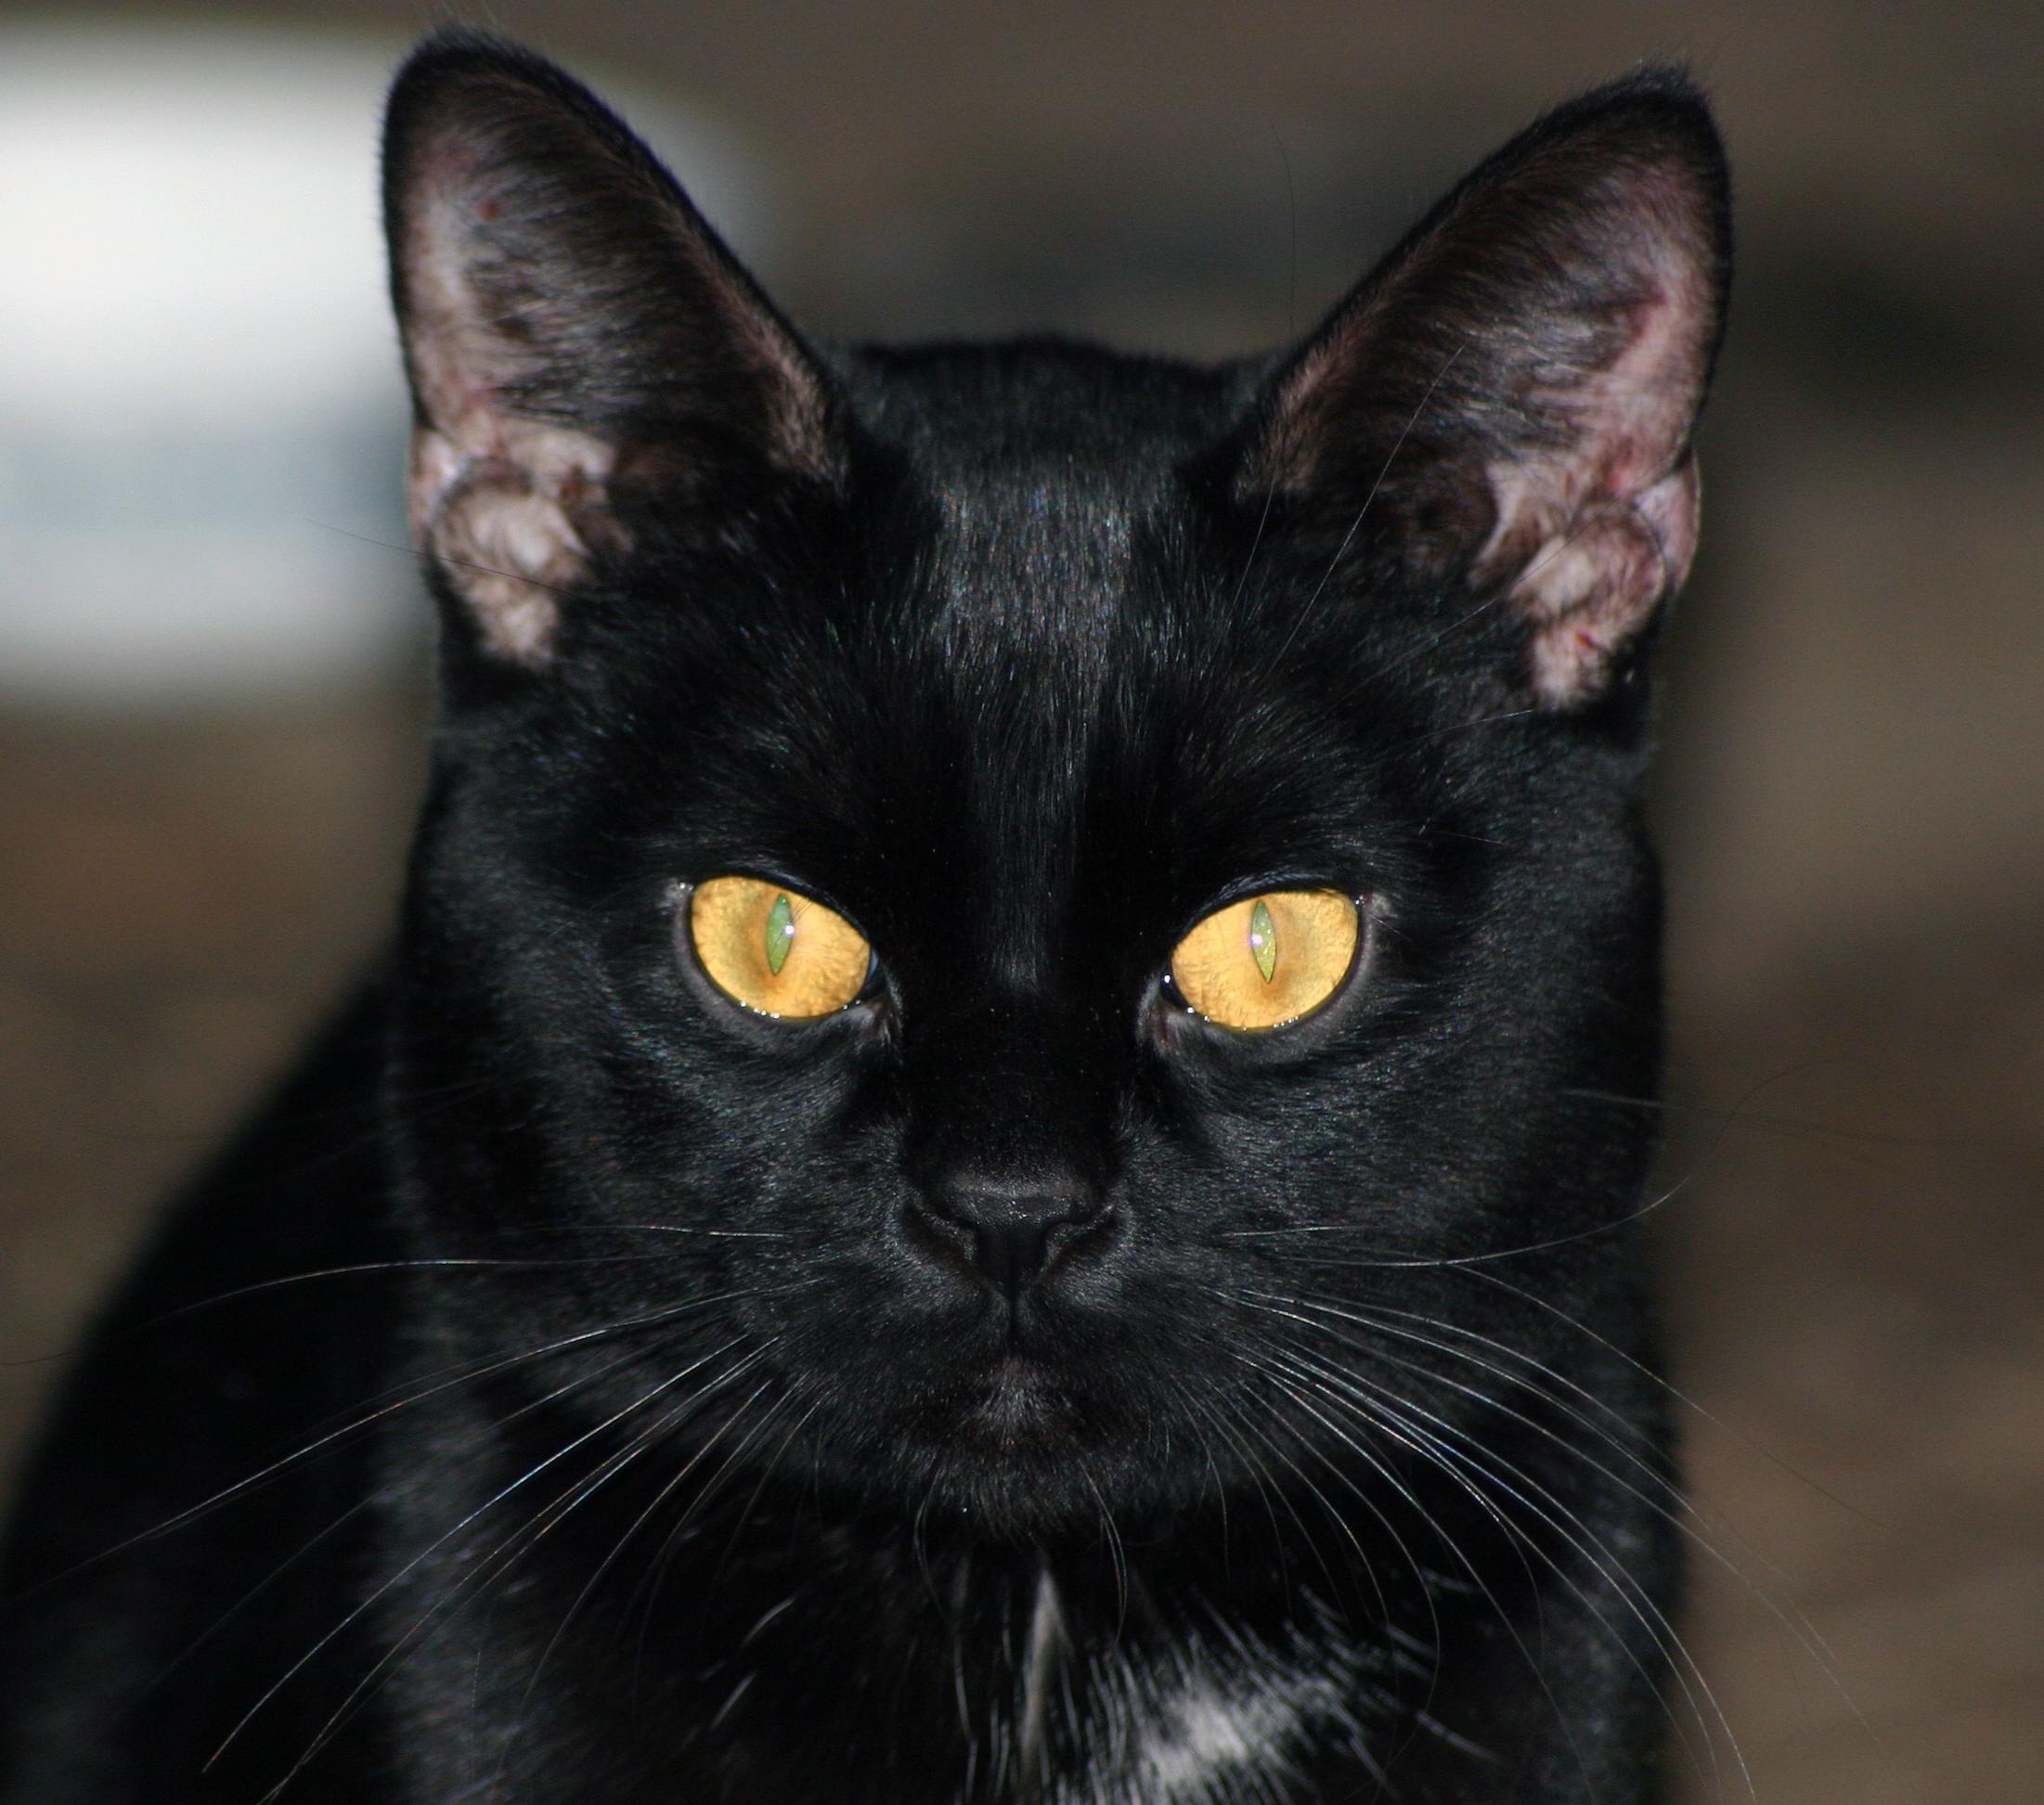 Free picture: black cat, pet, portrait, animal, cute, kitten, eye ...